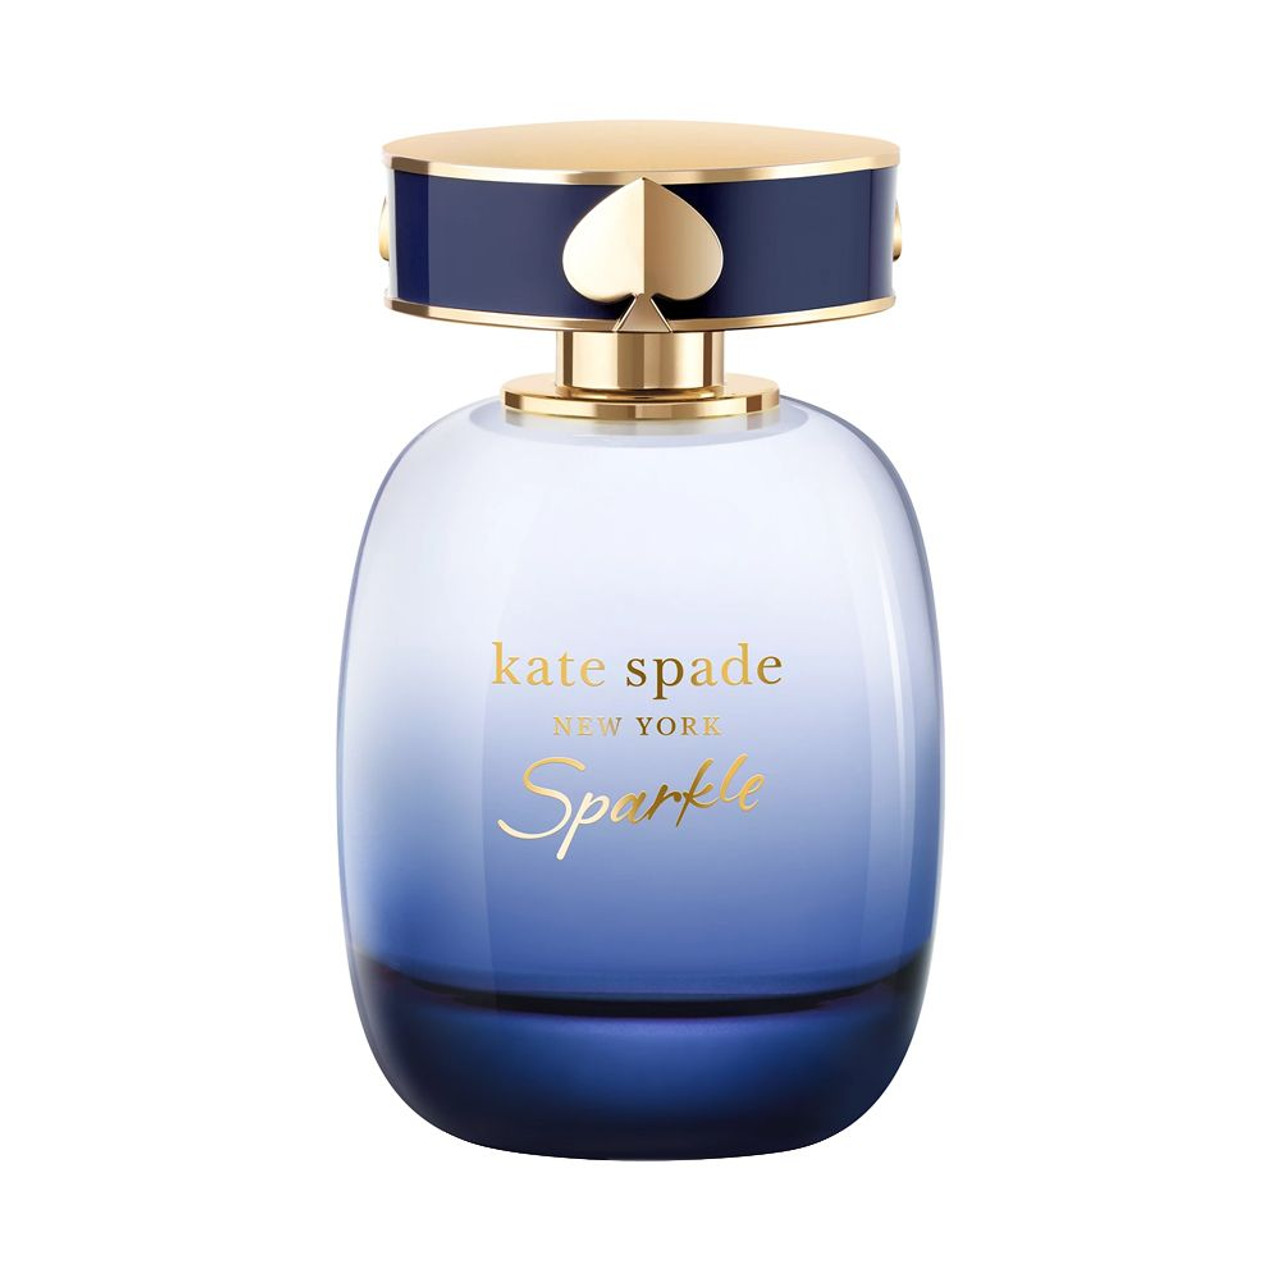 kate spade - Sparkle Eau de Parfum Intense  oz. - Beauty Bridge